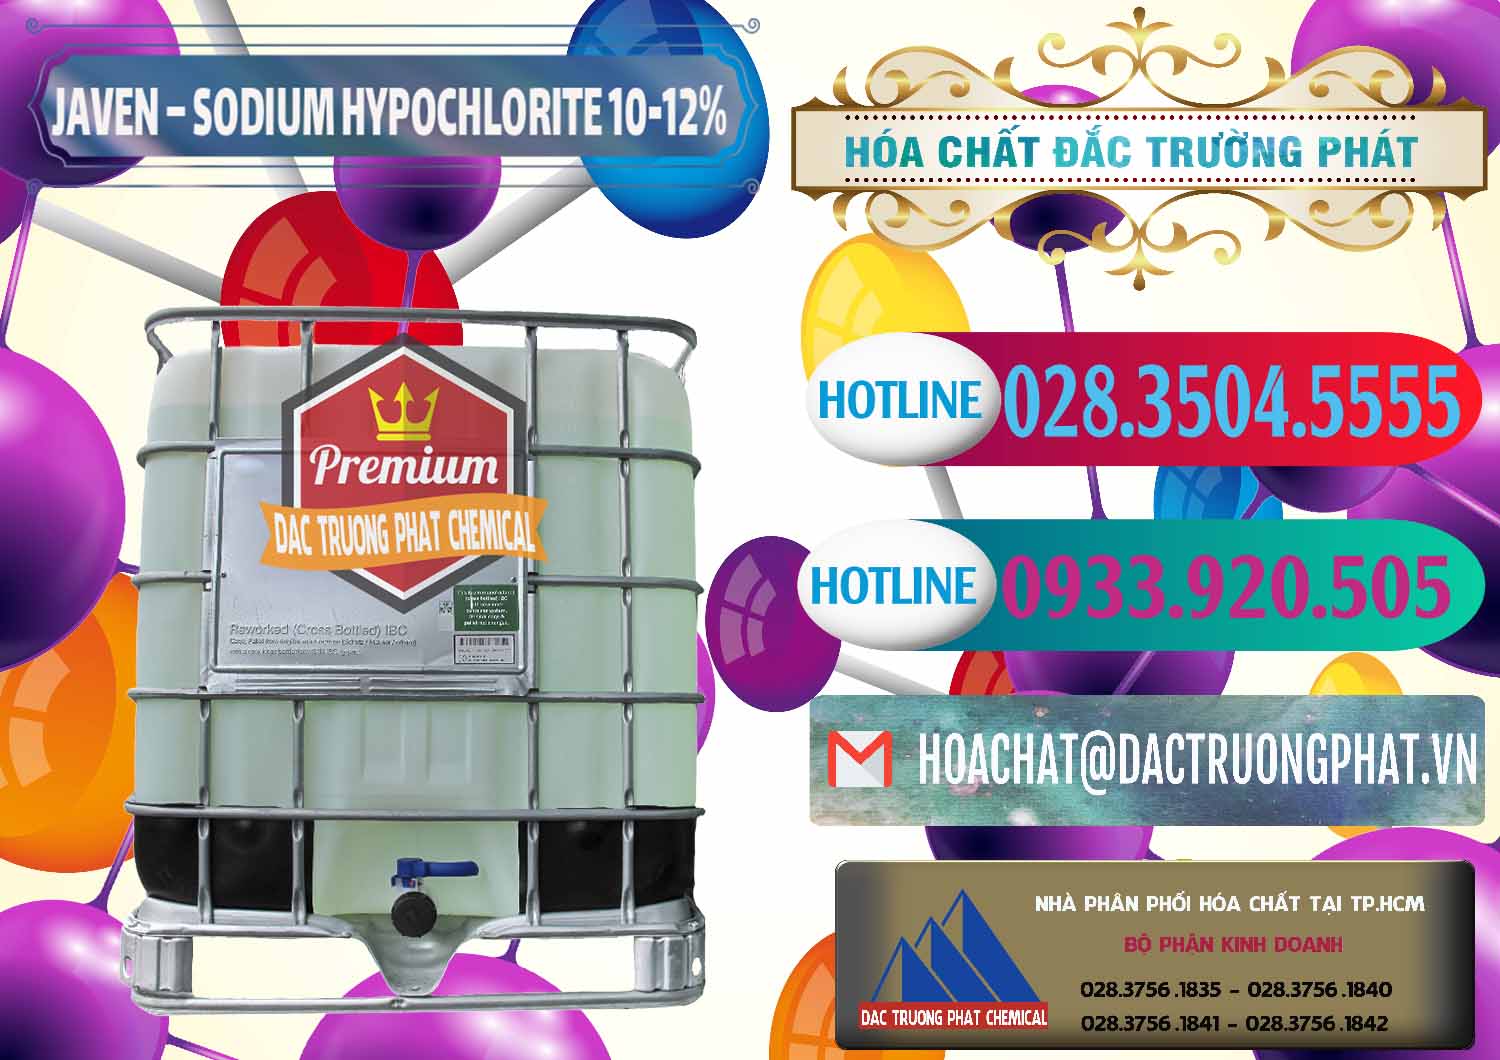 Nơi chuyên phân phối và kinh doanh Javen - Sodium Hypochlorite 10-12% Việt Nam - 0188 - Nơi cung cấp - phân phối hóa chất tại TP.HCM - truongphat.vn